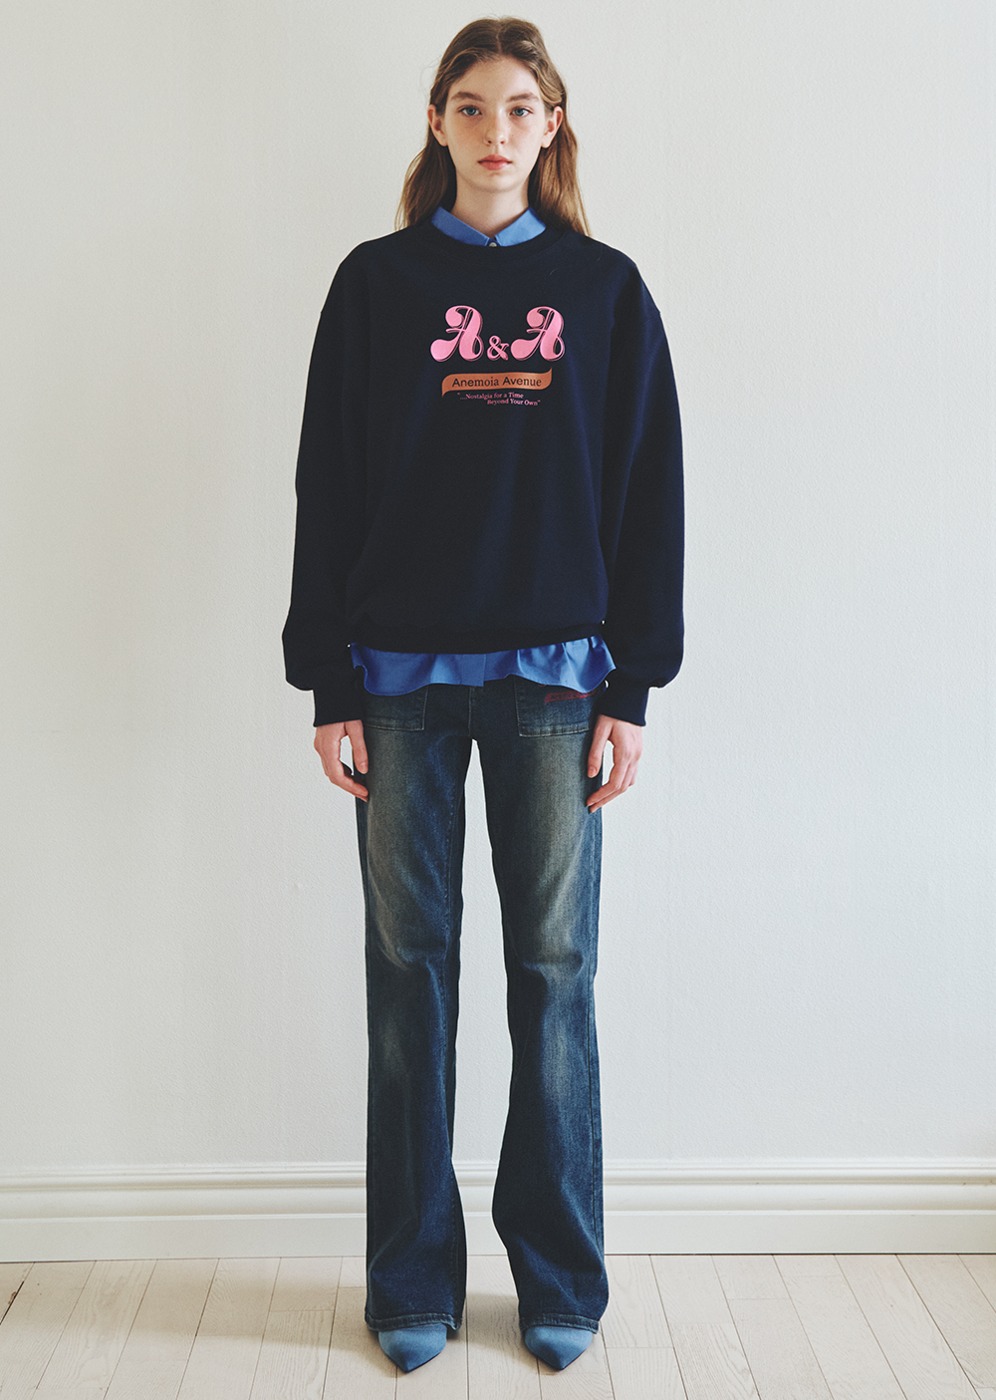 Anemoia graphic Sweatshirt [NAVY]Anemoia graphic Sweatshirt [NAVY]로씨로씨